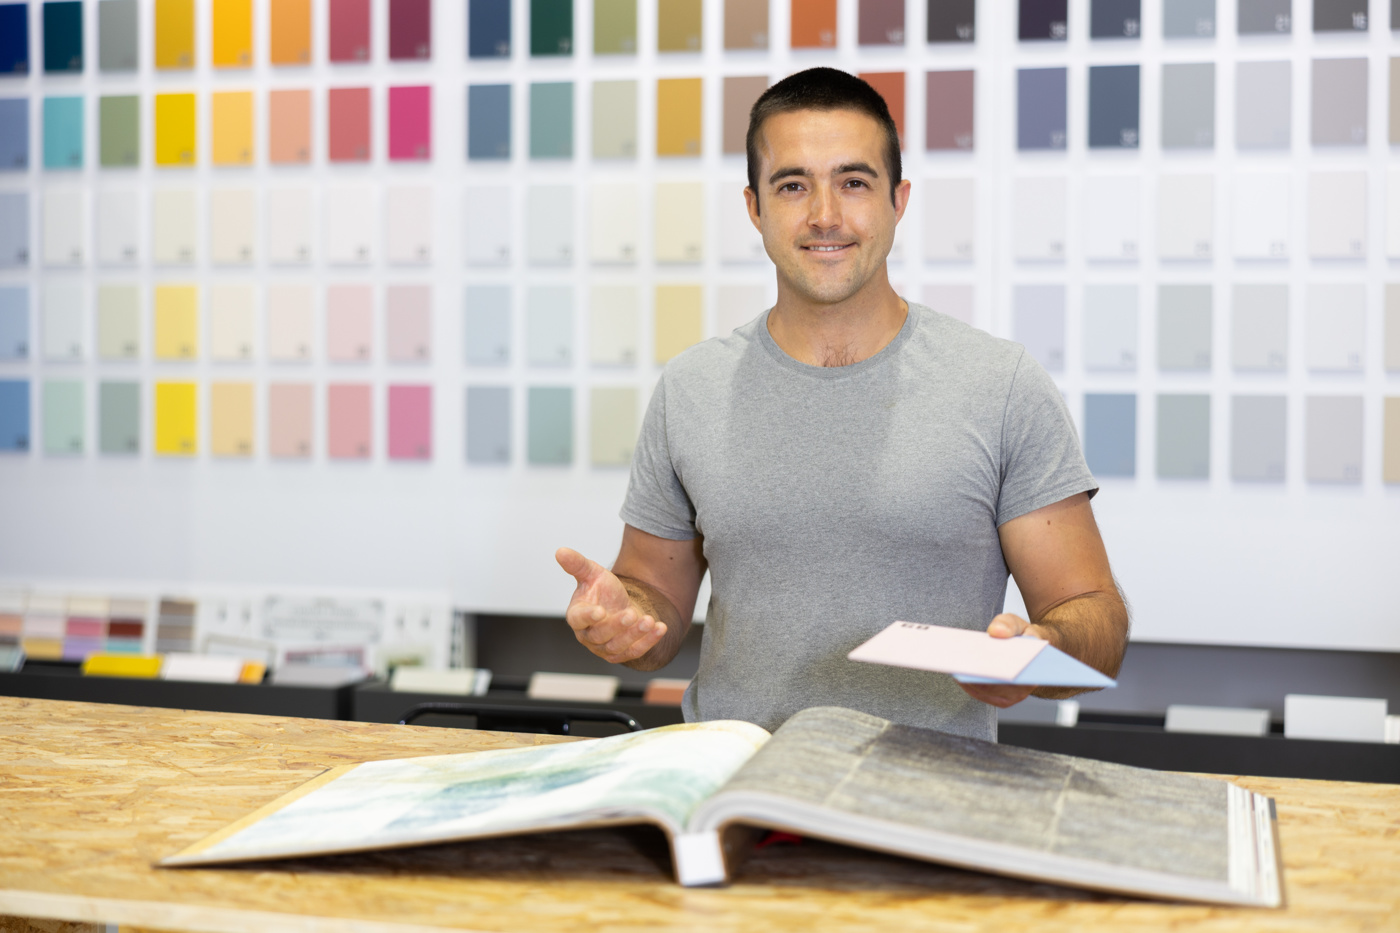 Un interior designer con attestato federale determina il colore giusto per le nuove tende in base alle esigenze del cliente.